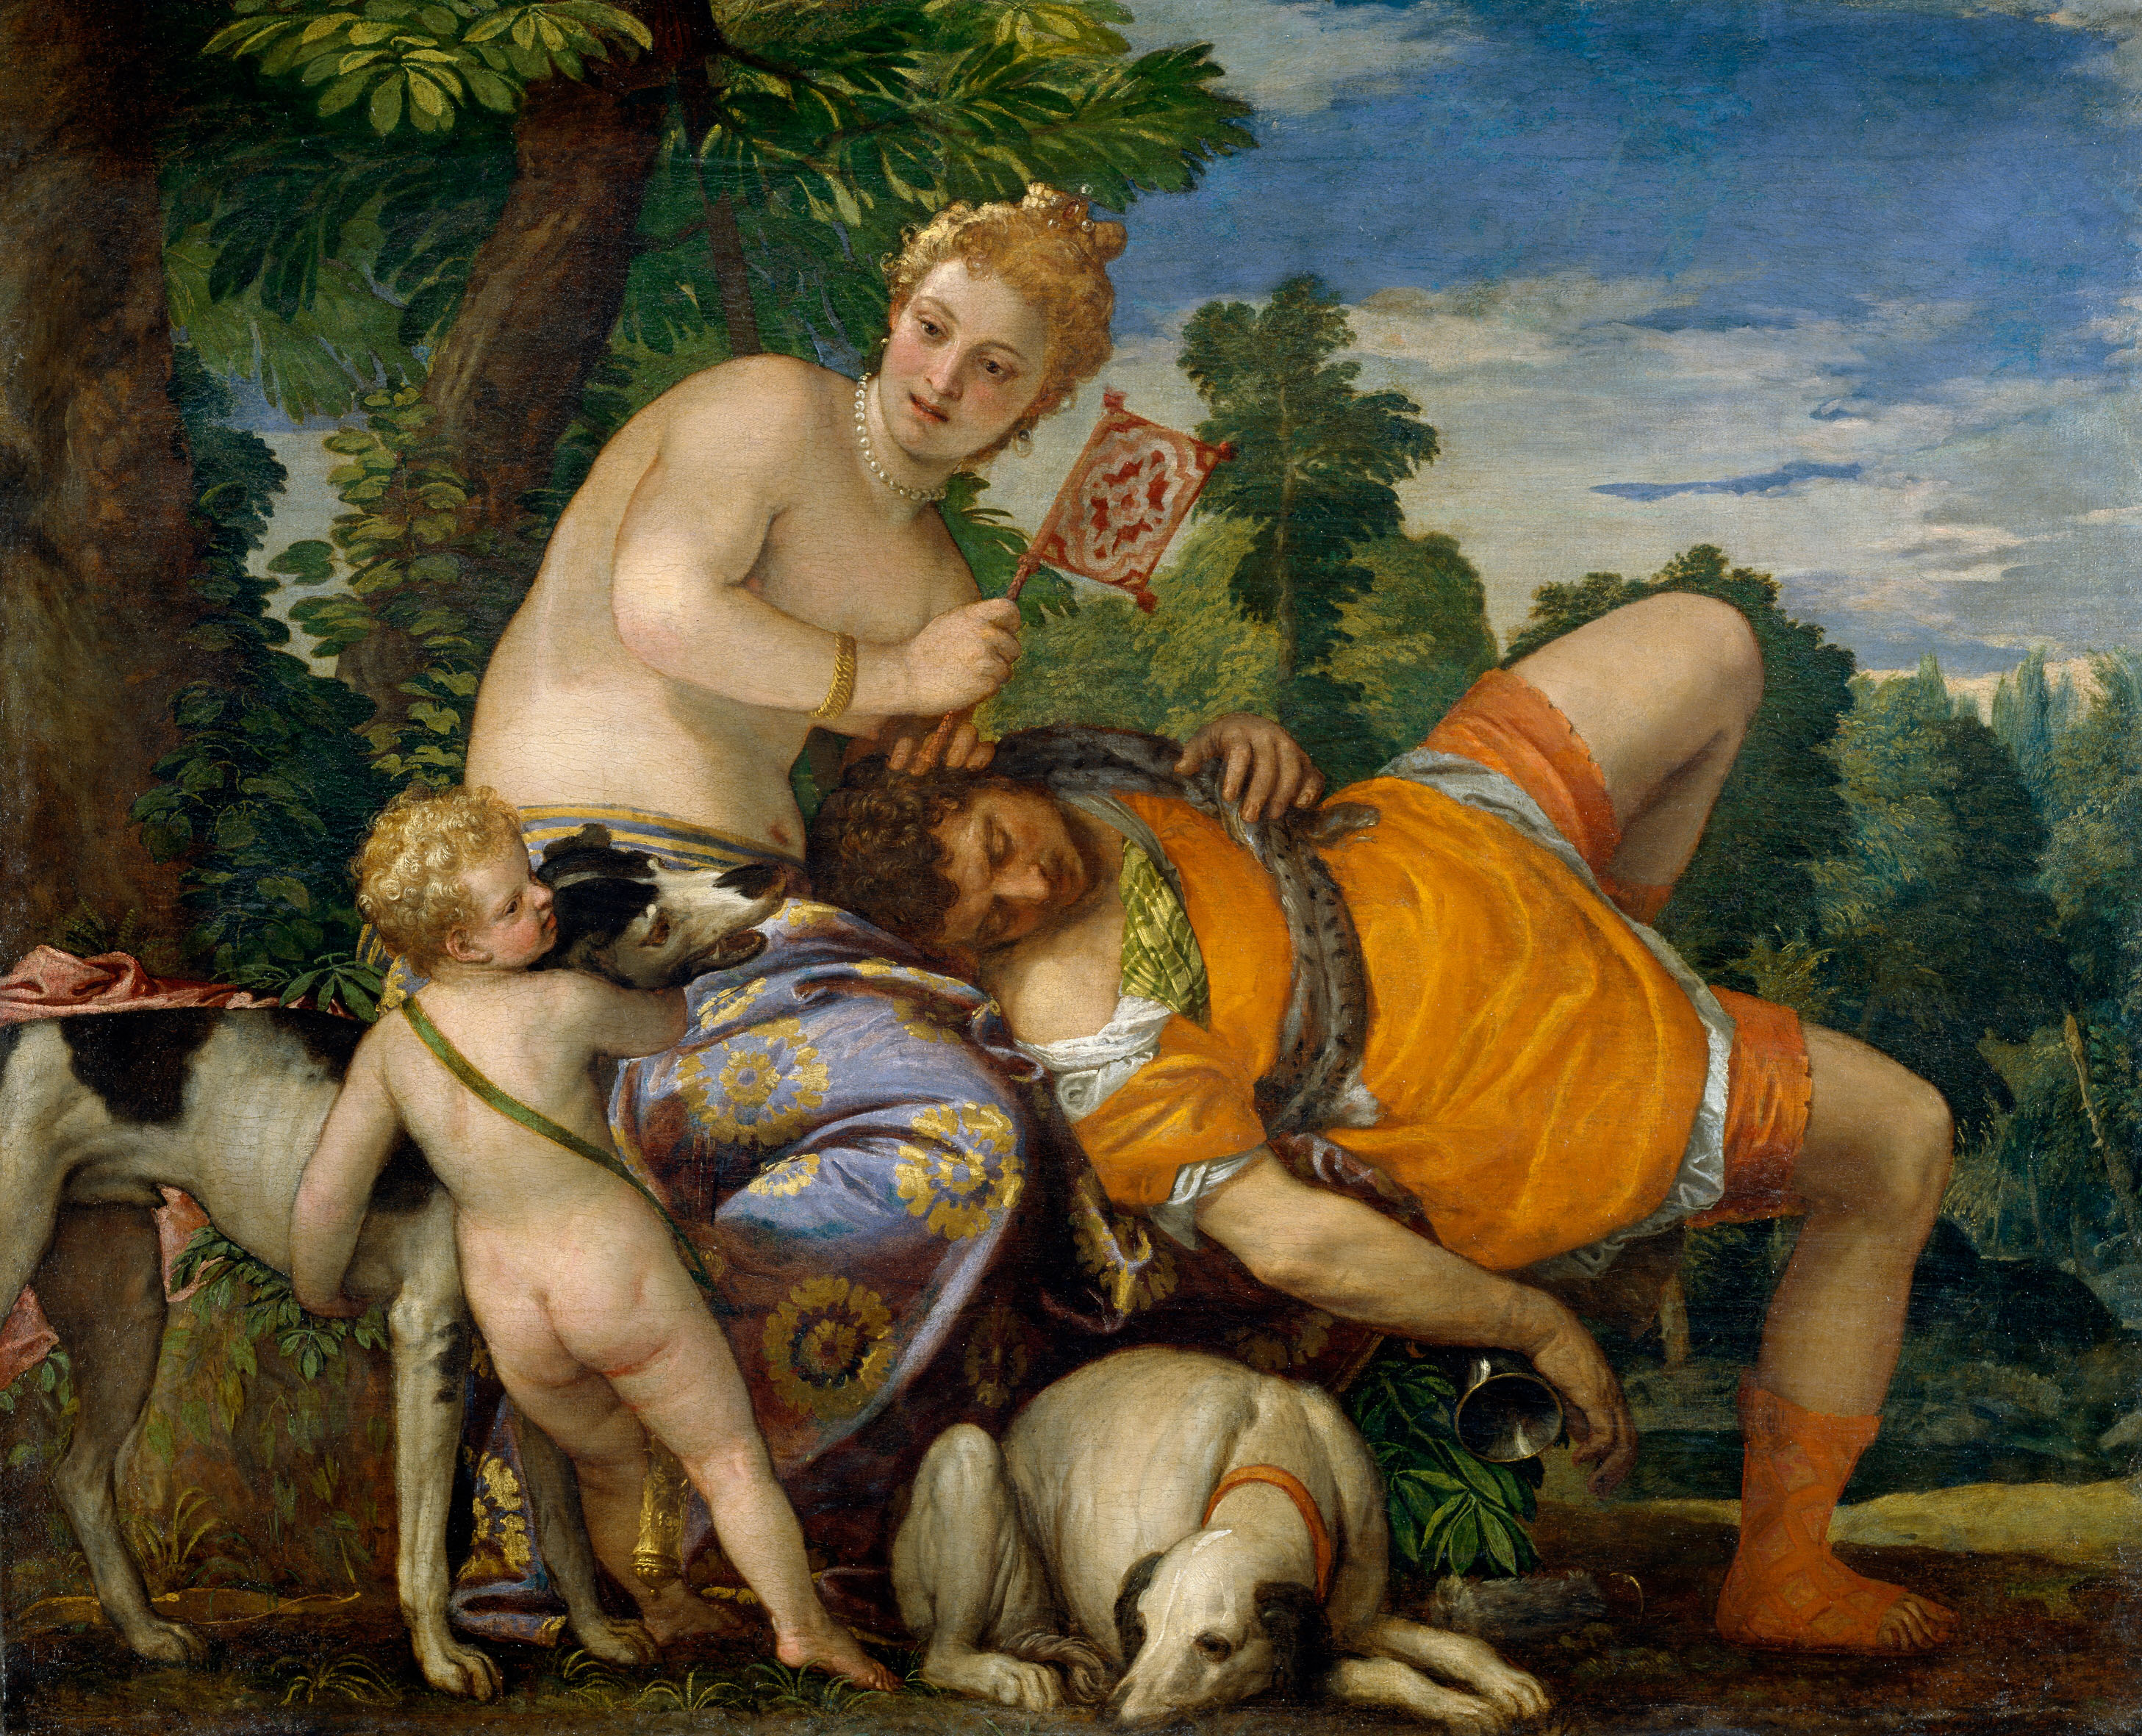 Venus and Adonis, Veronese